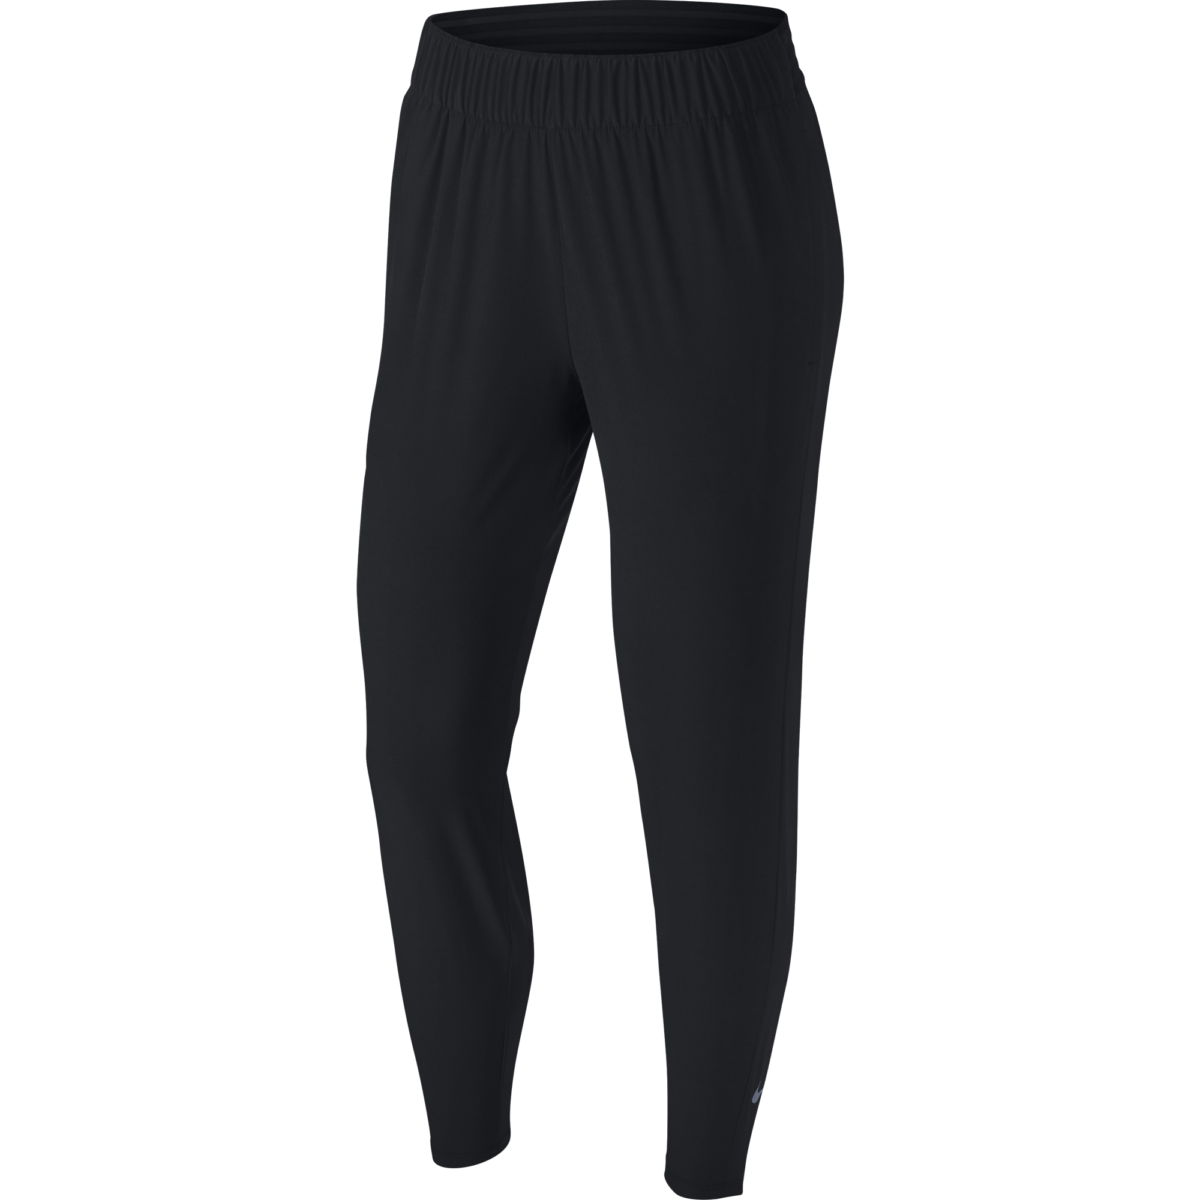 Nike Essential 7/8 Running Pants Women's BV2898-011 Color Black